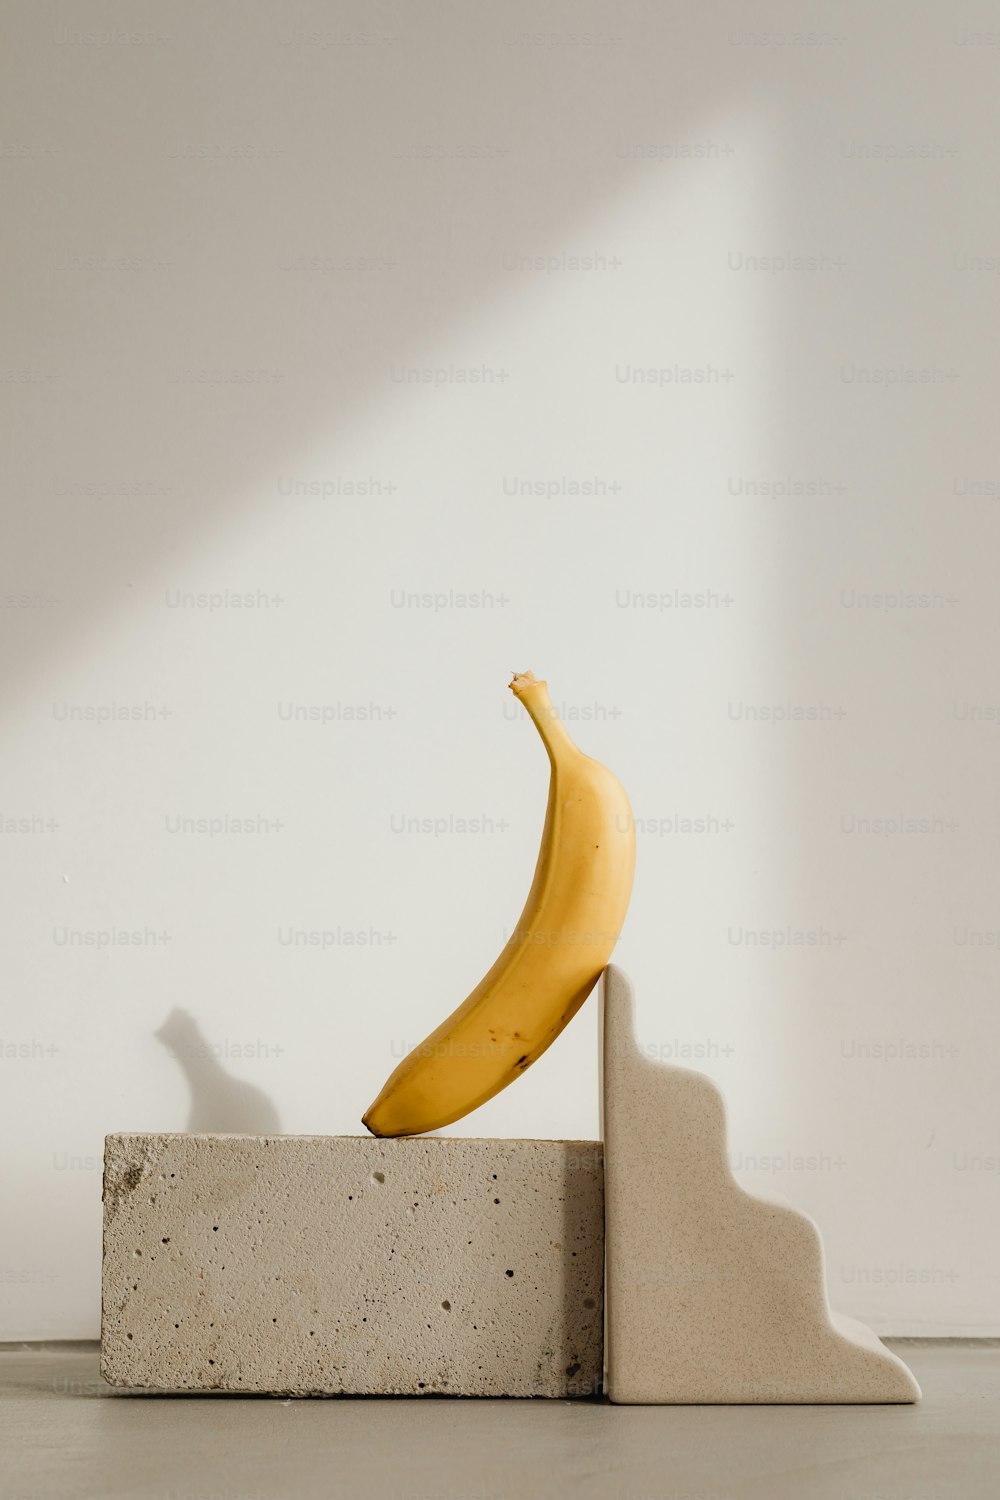 시멘트 블록 위에 앉아 있는 바나나